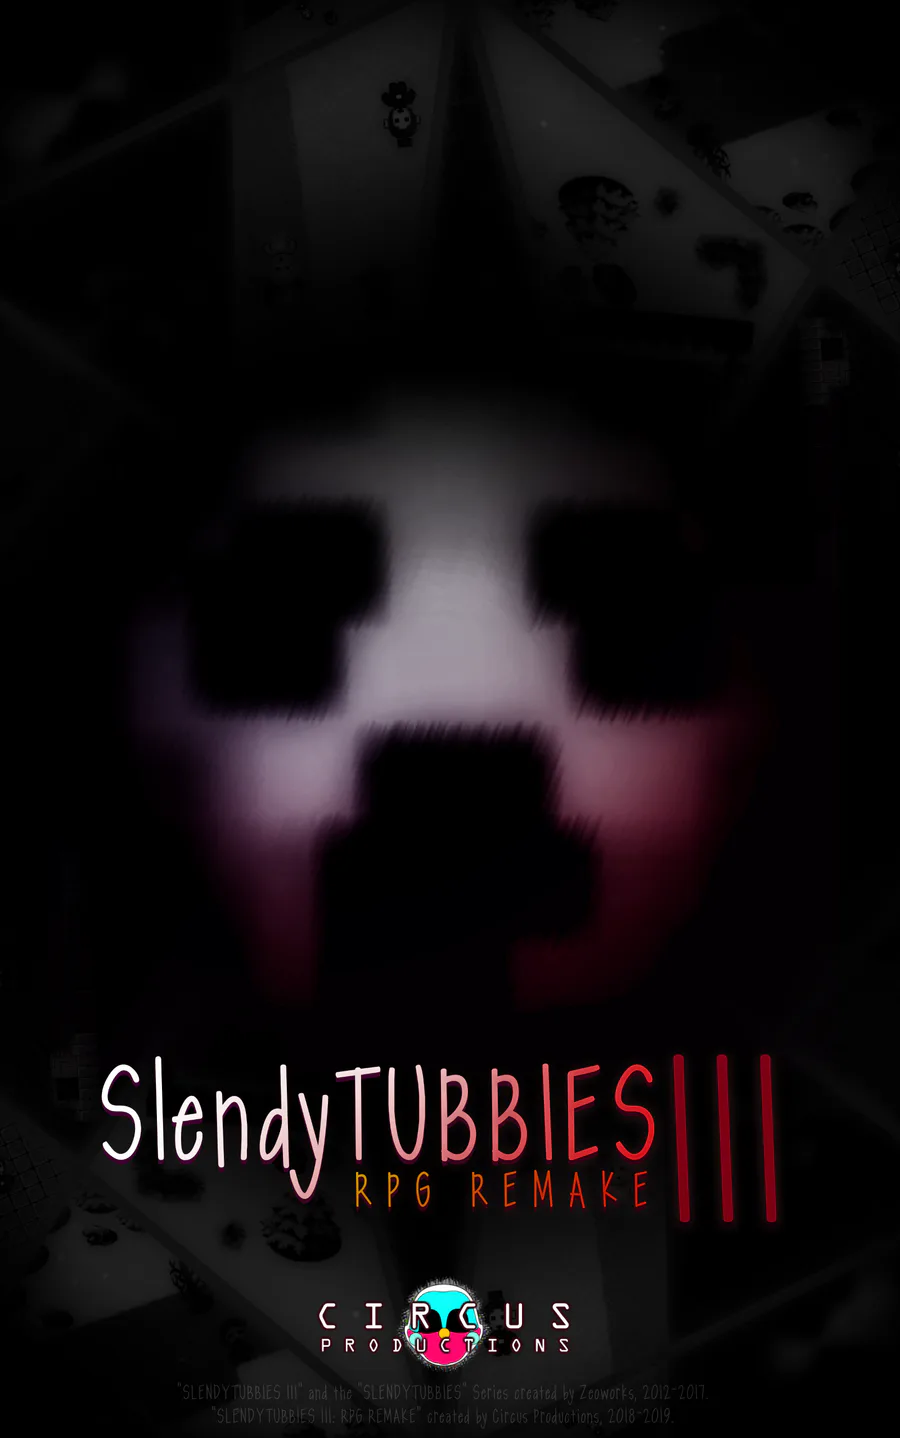 Slendytubbies (2012)